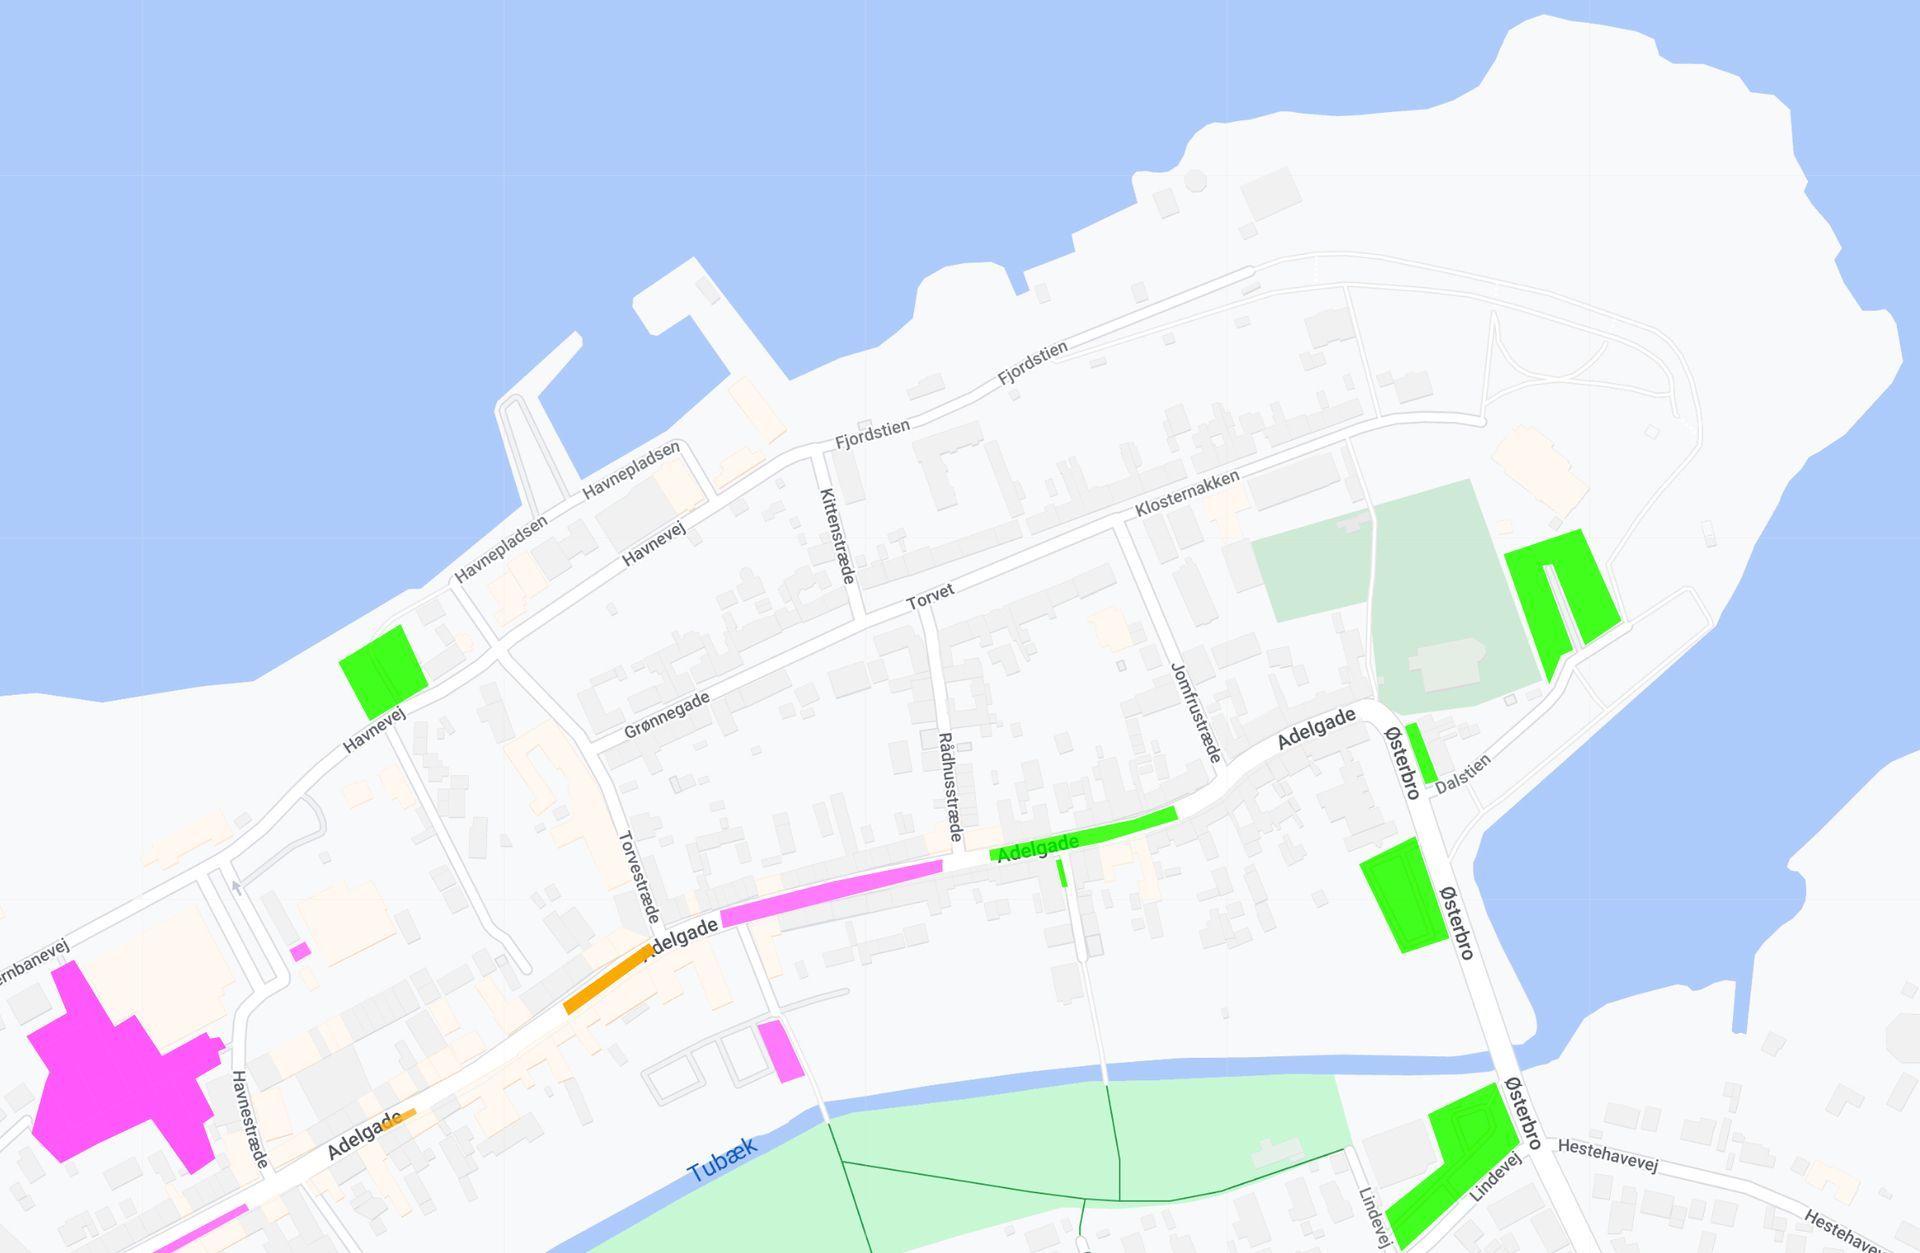 Kort der viser parkeringsmuligheder i Præstø